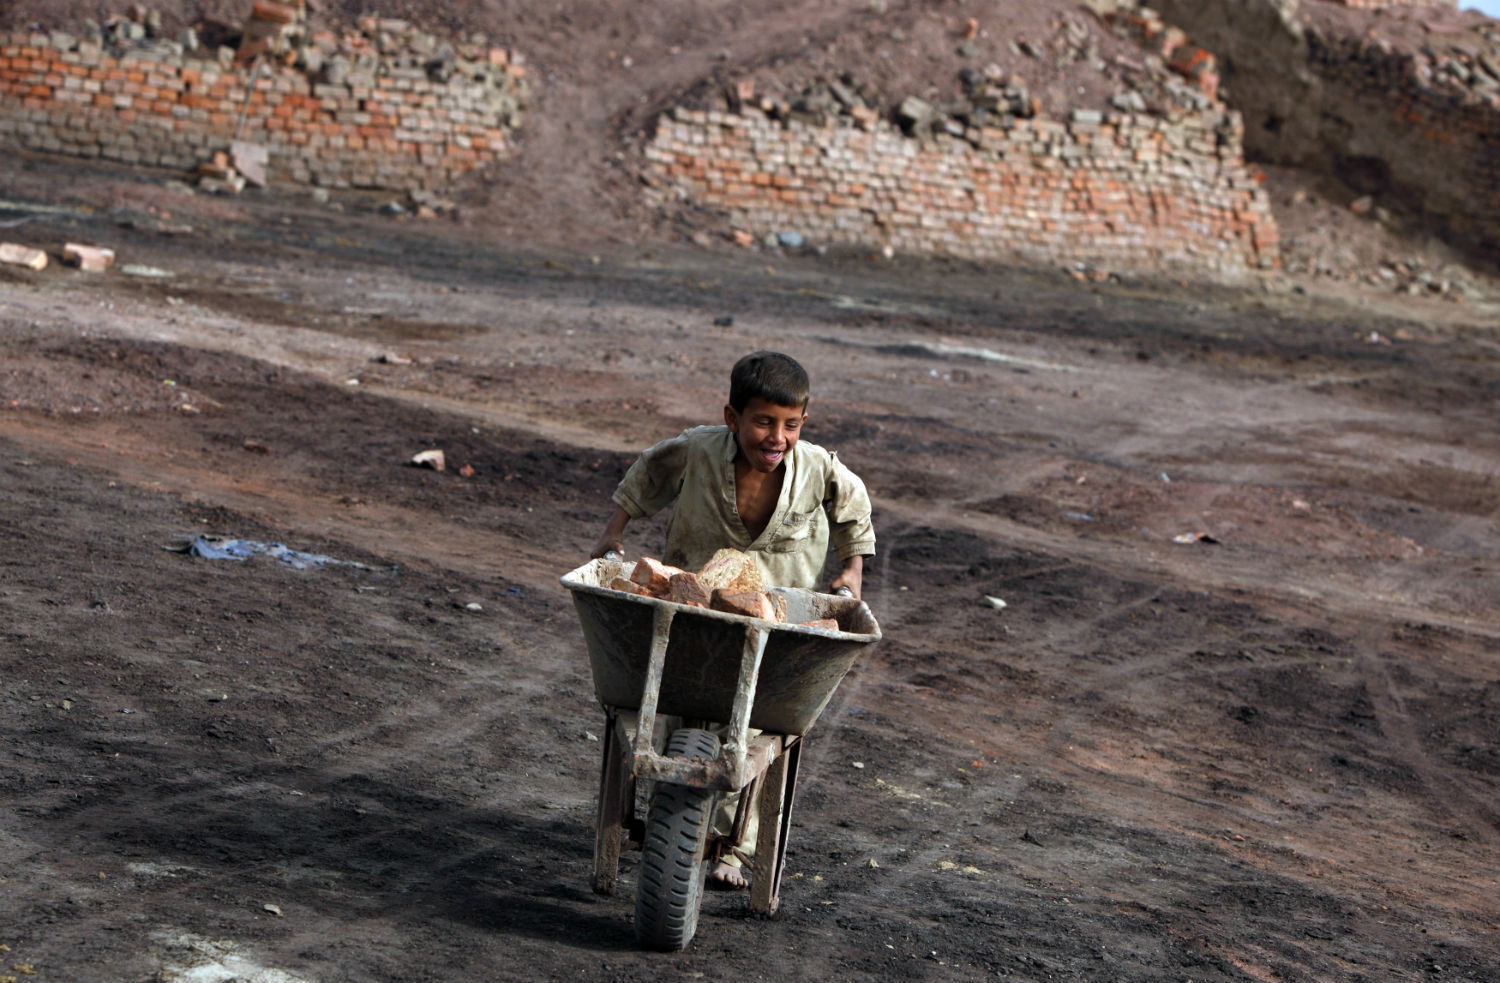 Encuentran a 200 niños trabajando en una fábrica de ladrillos en India